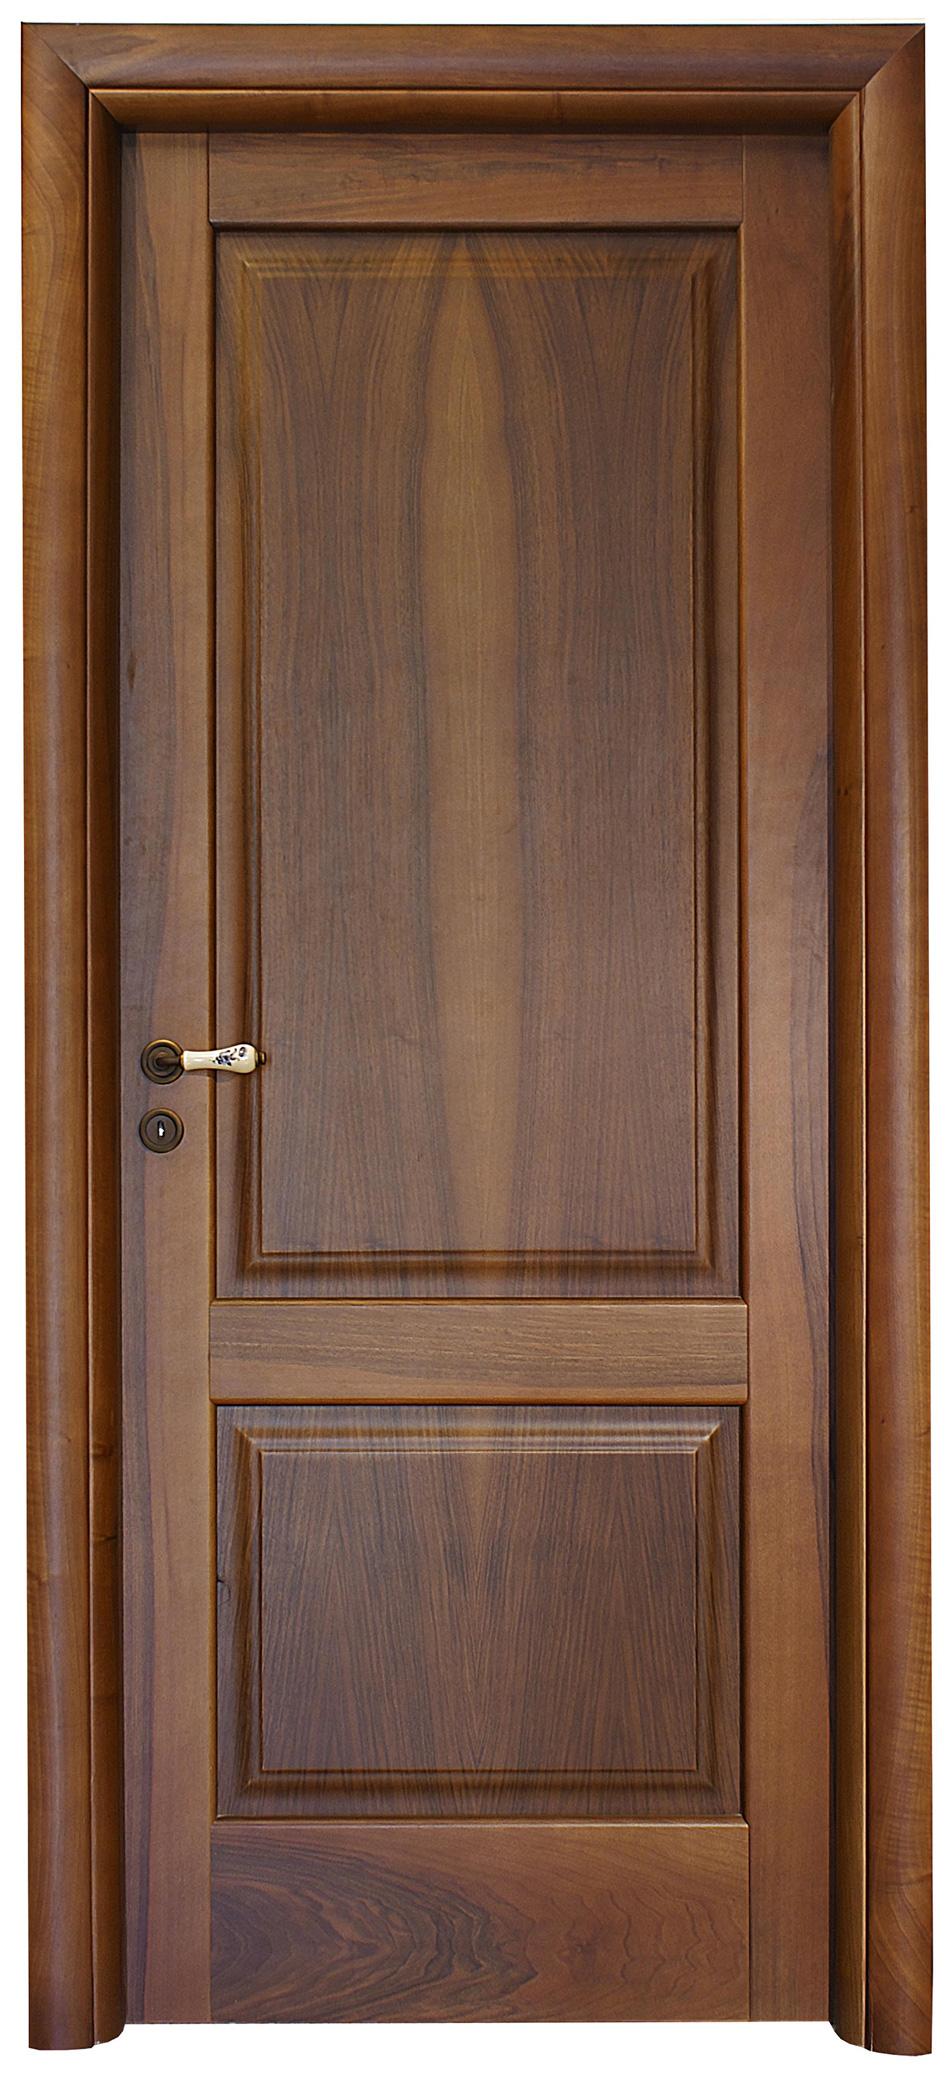 Residential Interior Door